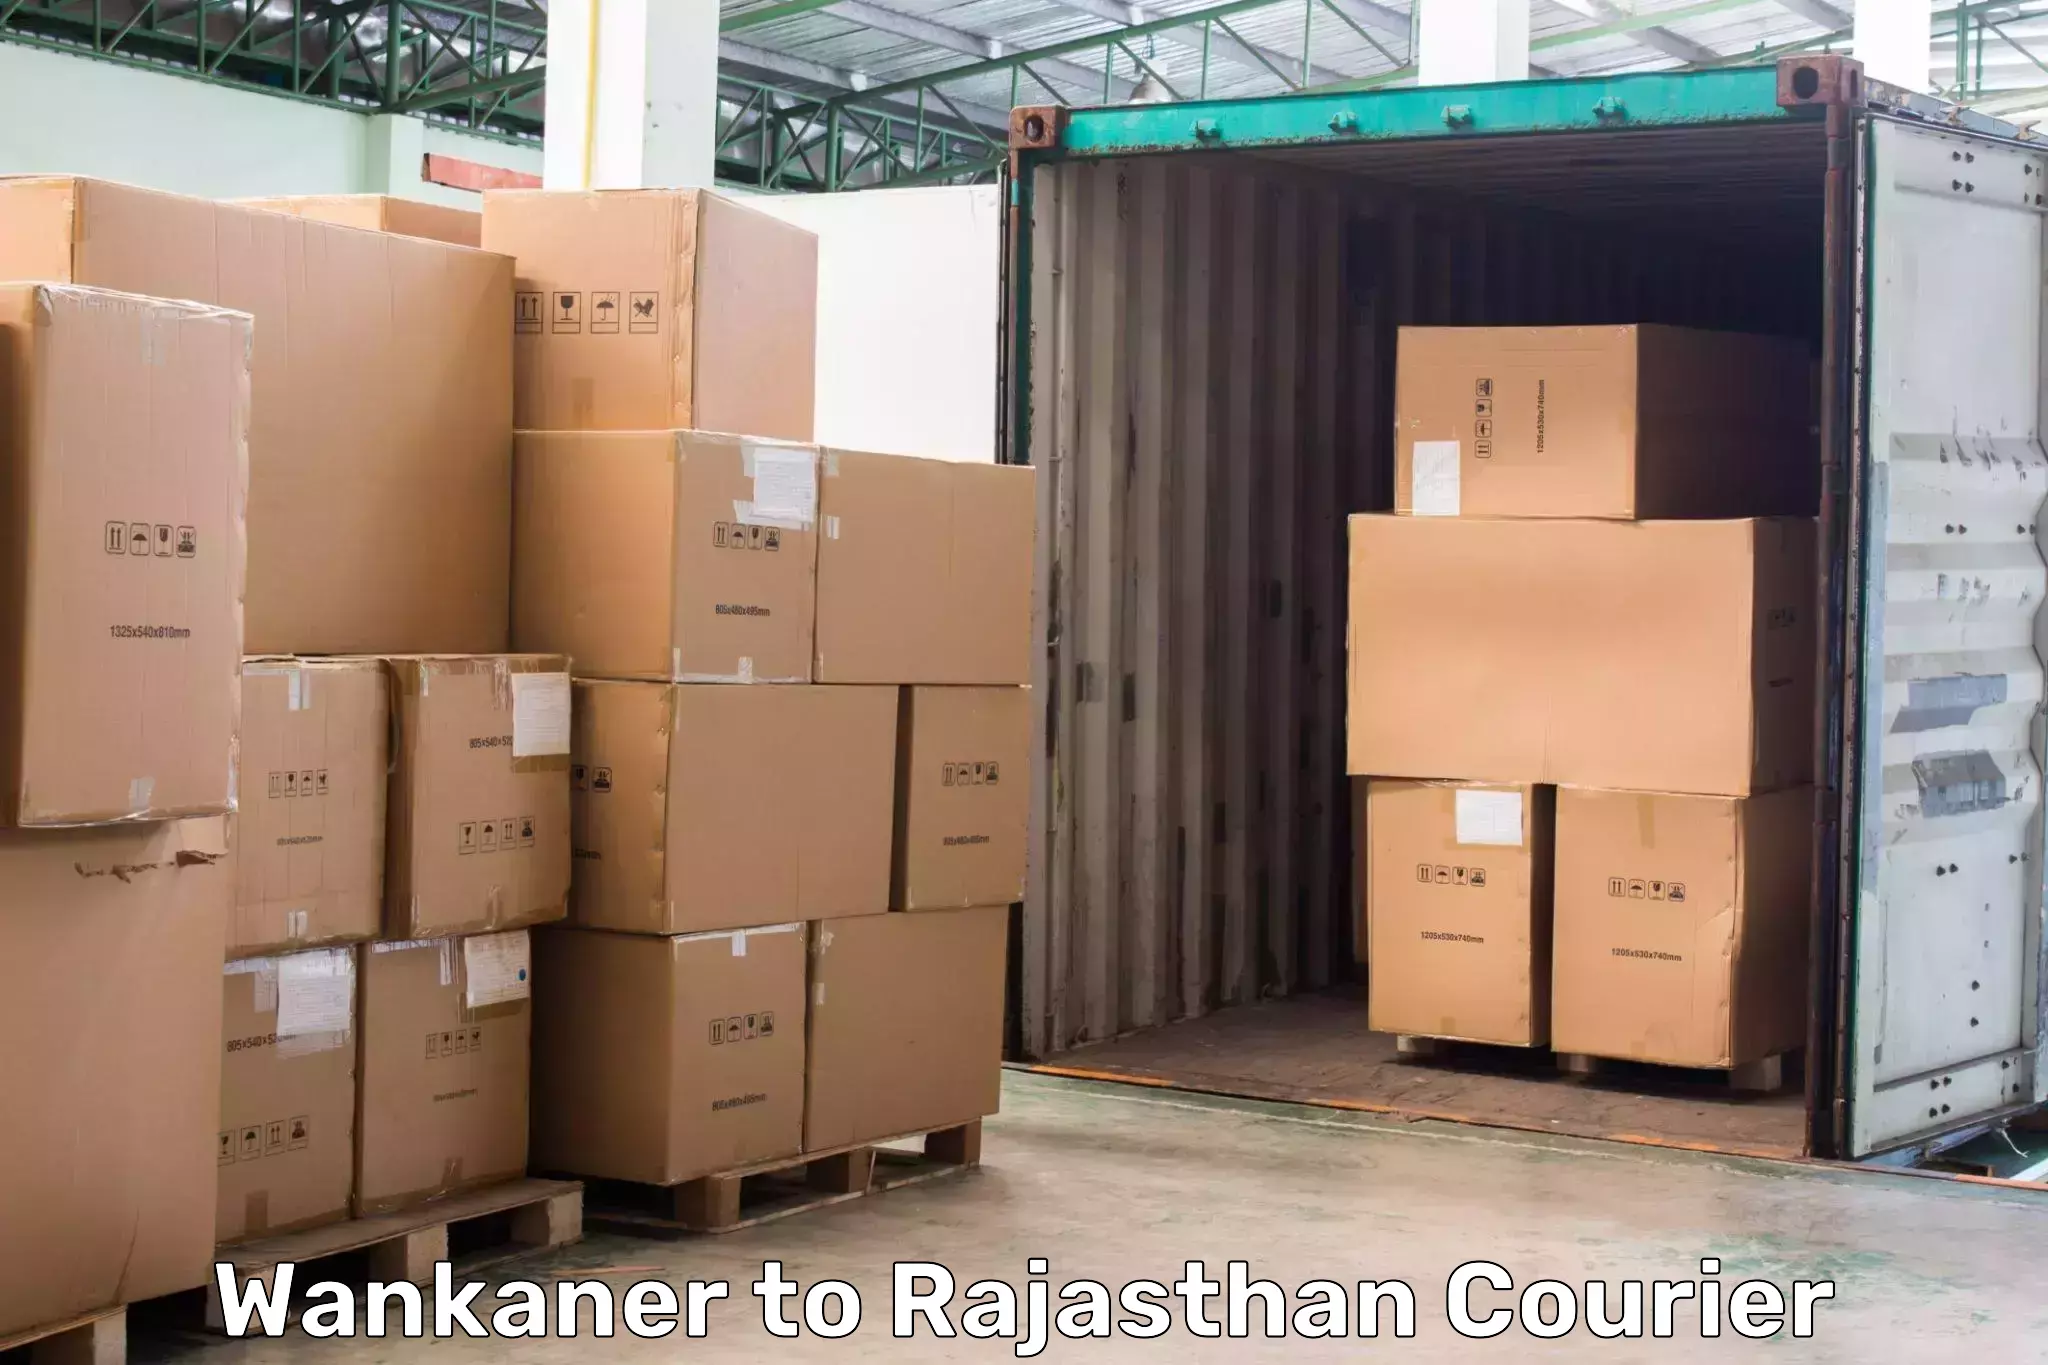 Doorstep delivery service Wankaner to Kalwar